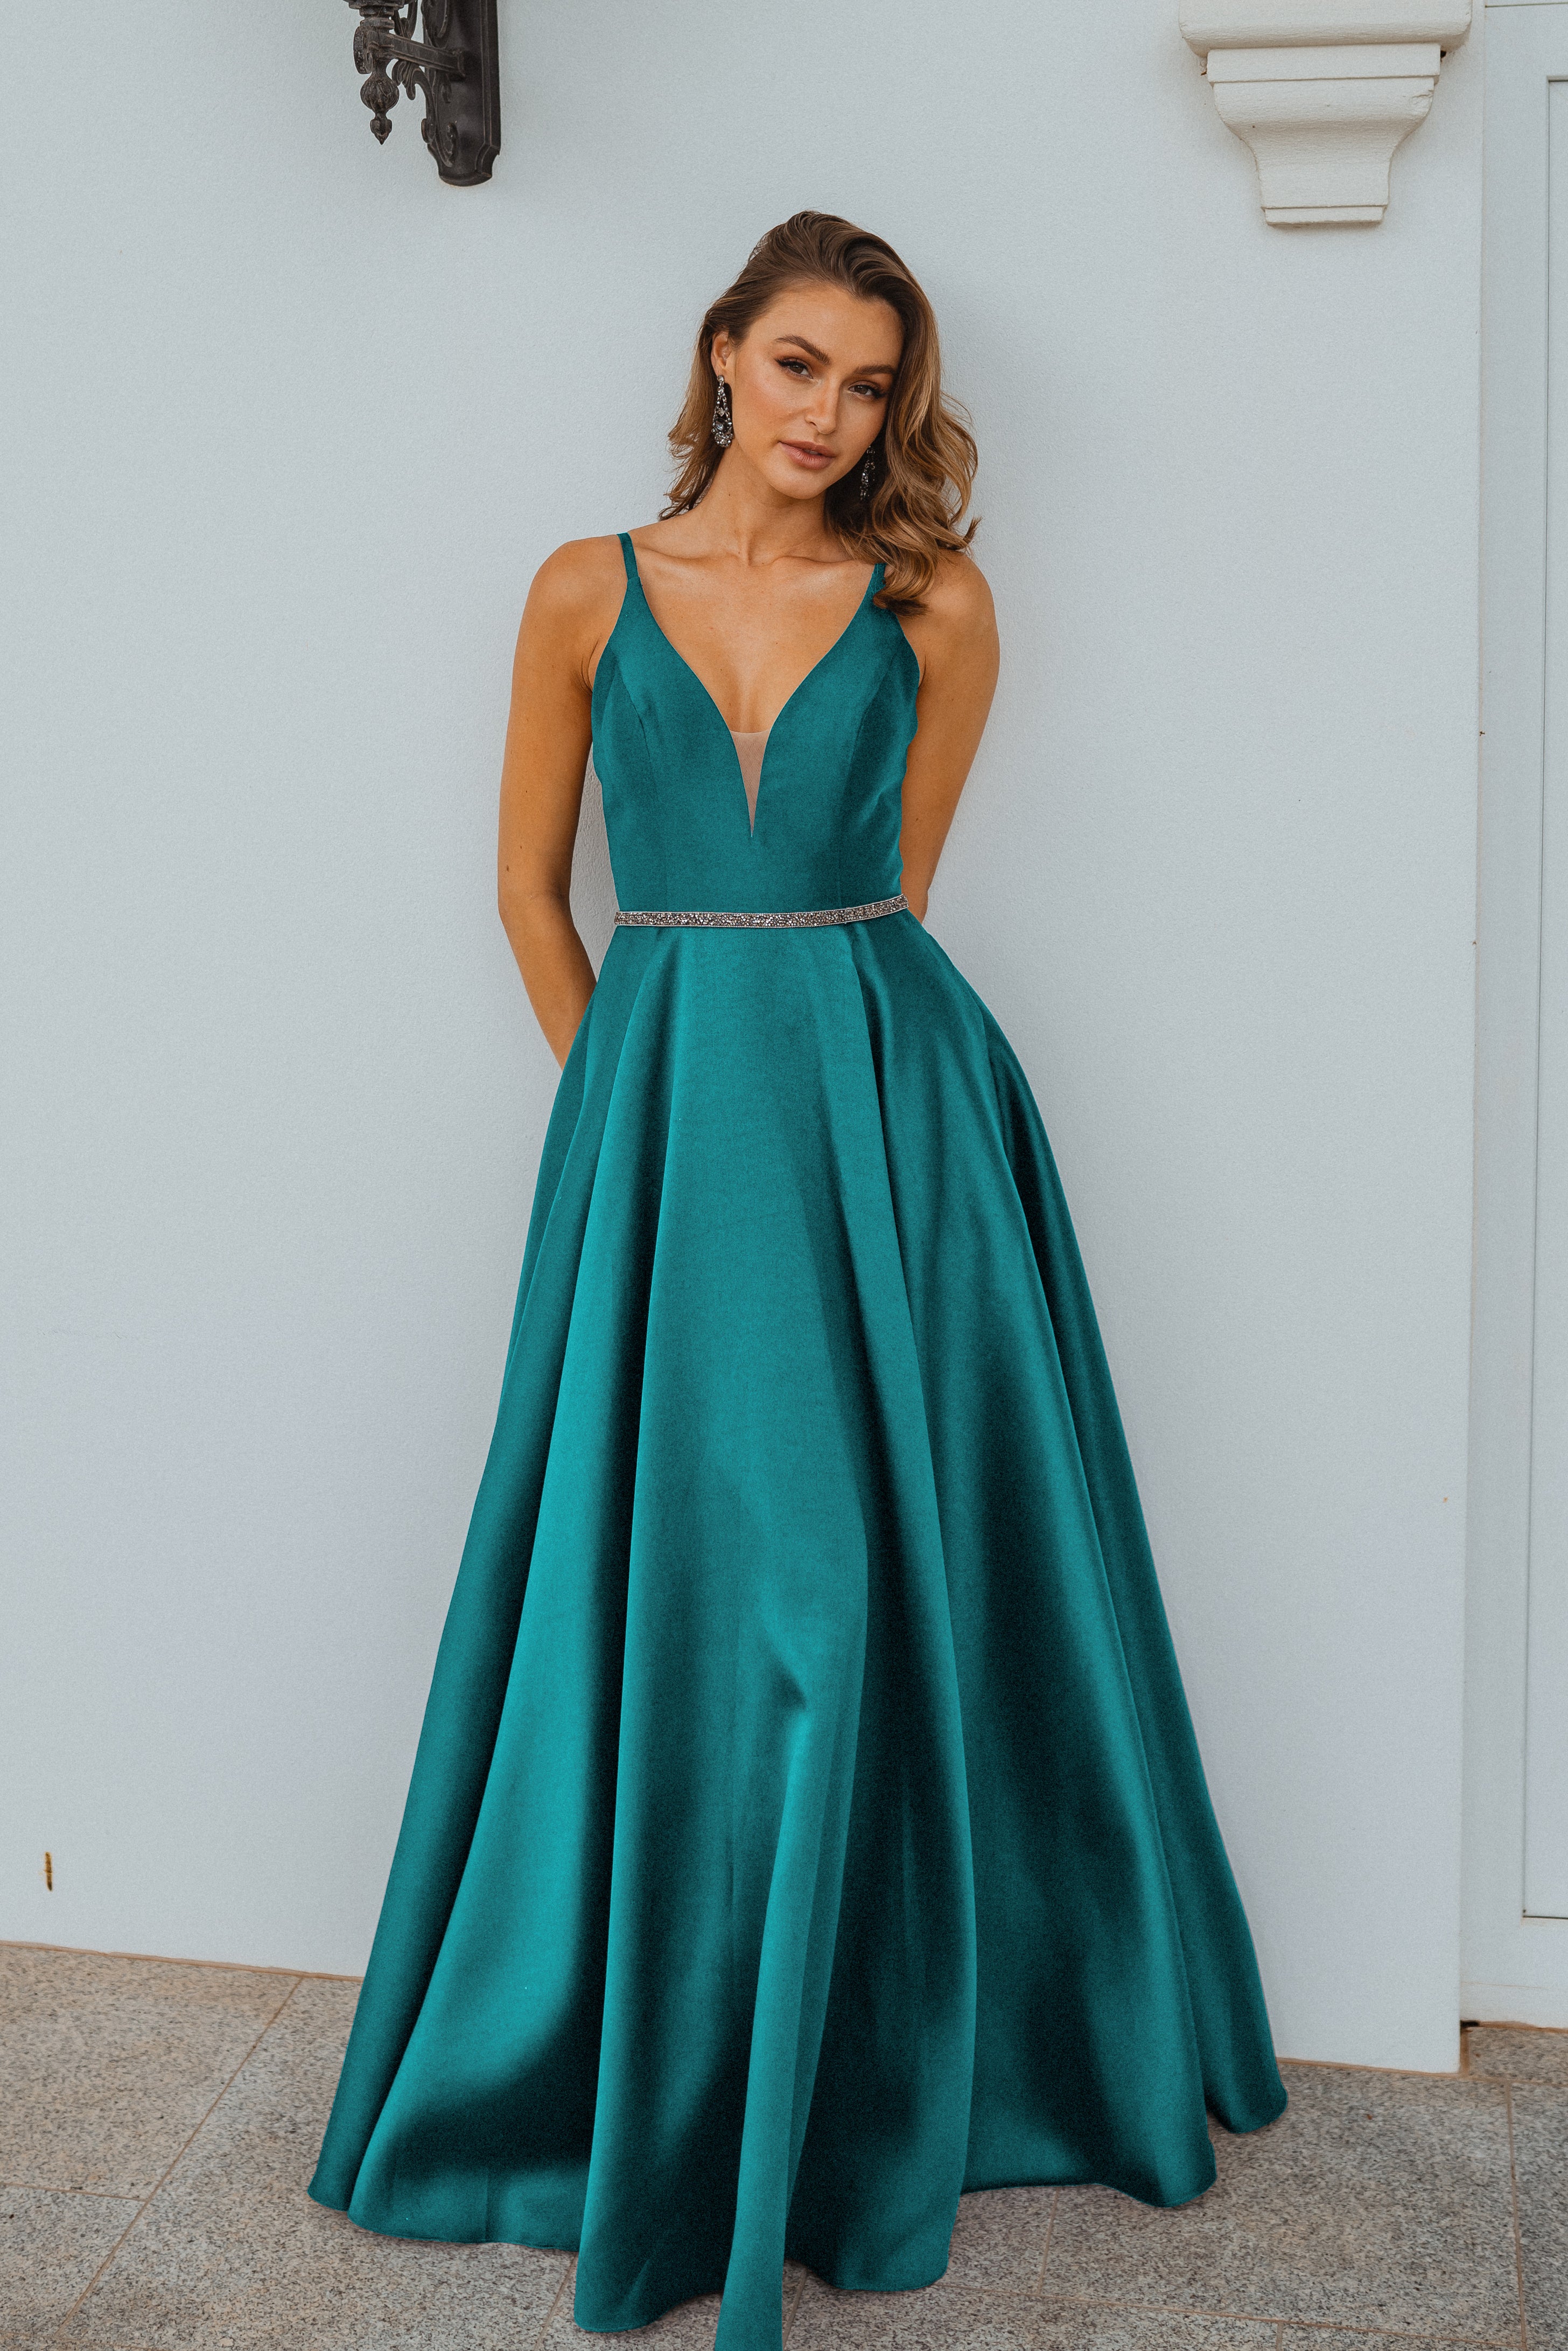 PO896 Linz front of emerald green plunging v neckline, floor length a line, matte satin formal dress